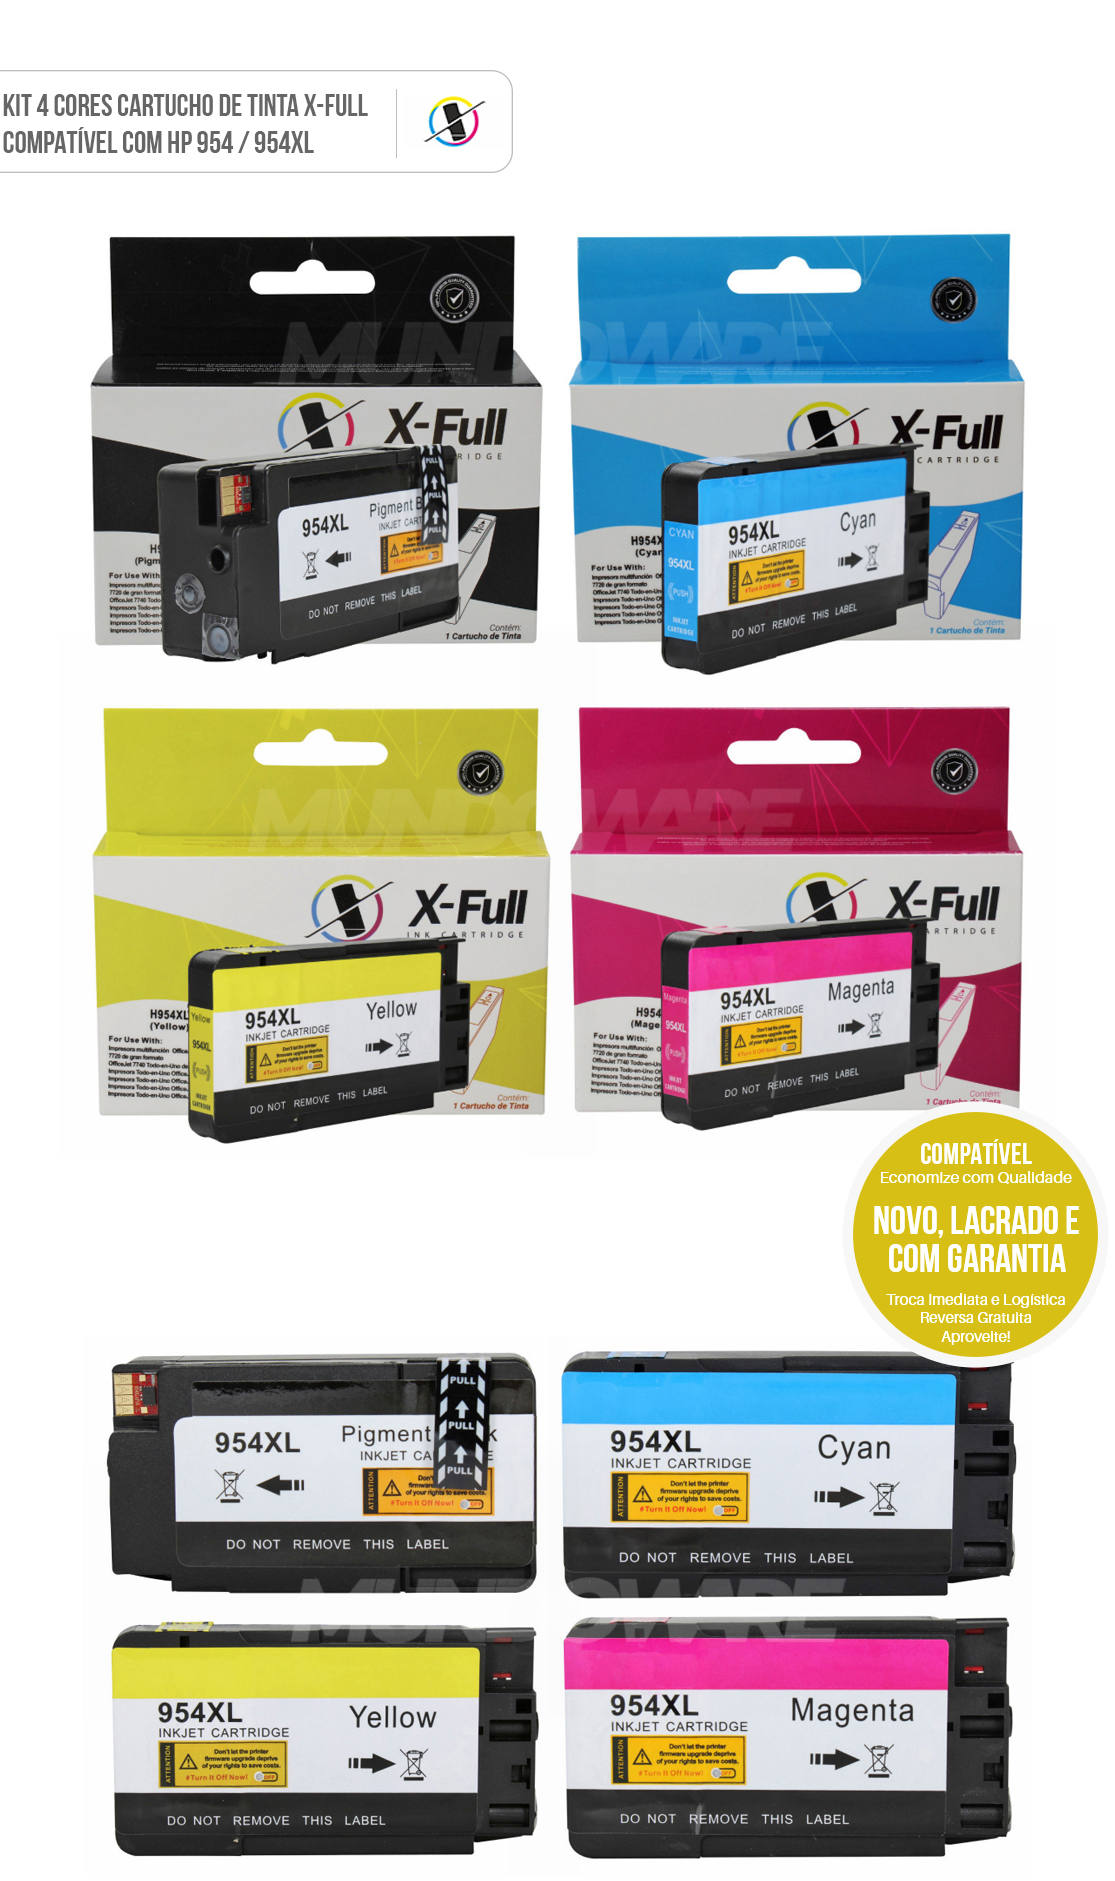 Kit 4 Cores Cartucho de Tinta X-Full Compatível com HP 954xl 954 para Impressora Pro 7720 7740 8210 8710 8720 8730